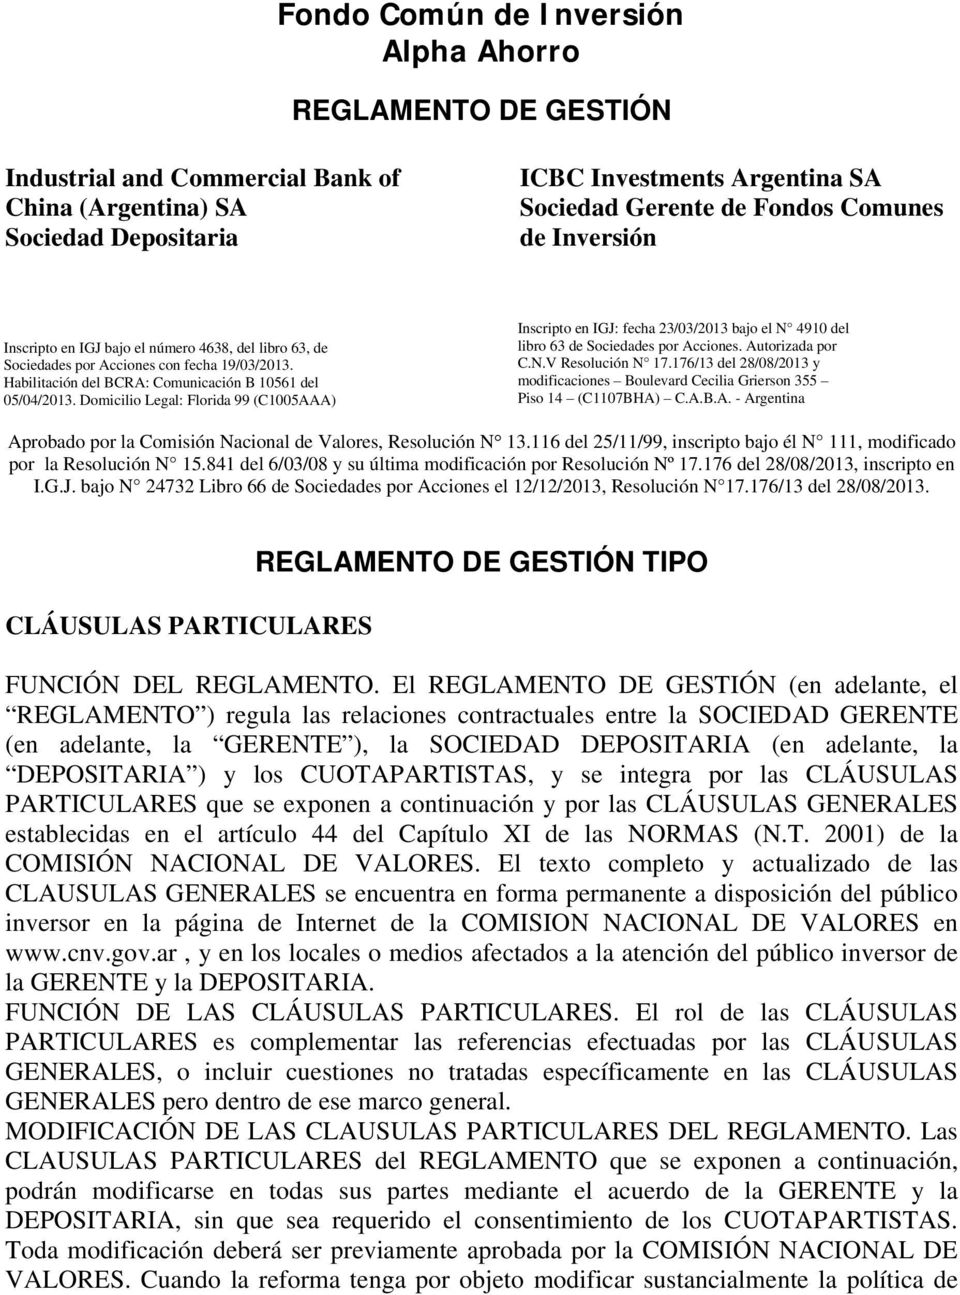 Domicilio Legal: Florida 99 (C1005AAA) Inscripto en IGJ: fecha 23/03/2013 bajo el N 4910 del libro 63 de Sociedades por Acciones. Autorizada por C.N.V Resolución N 17.